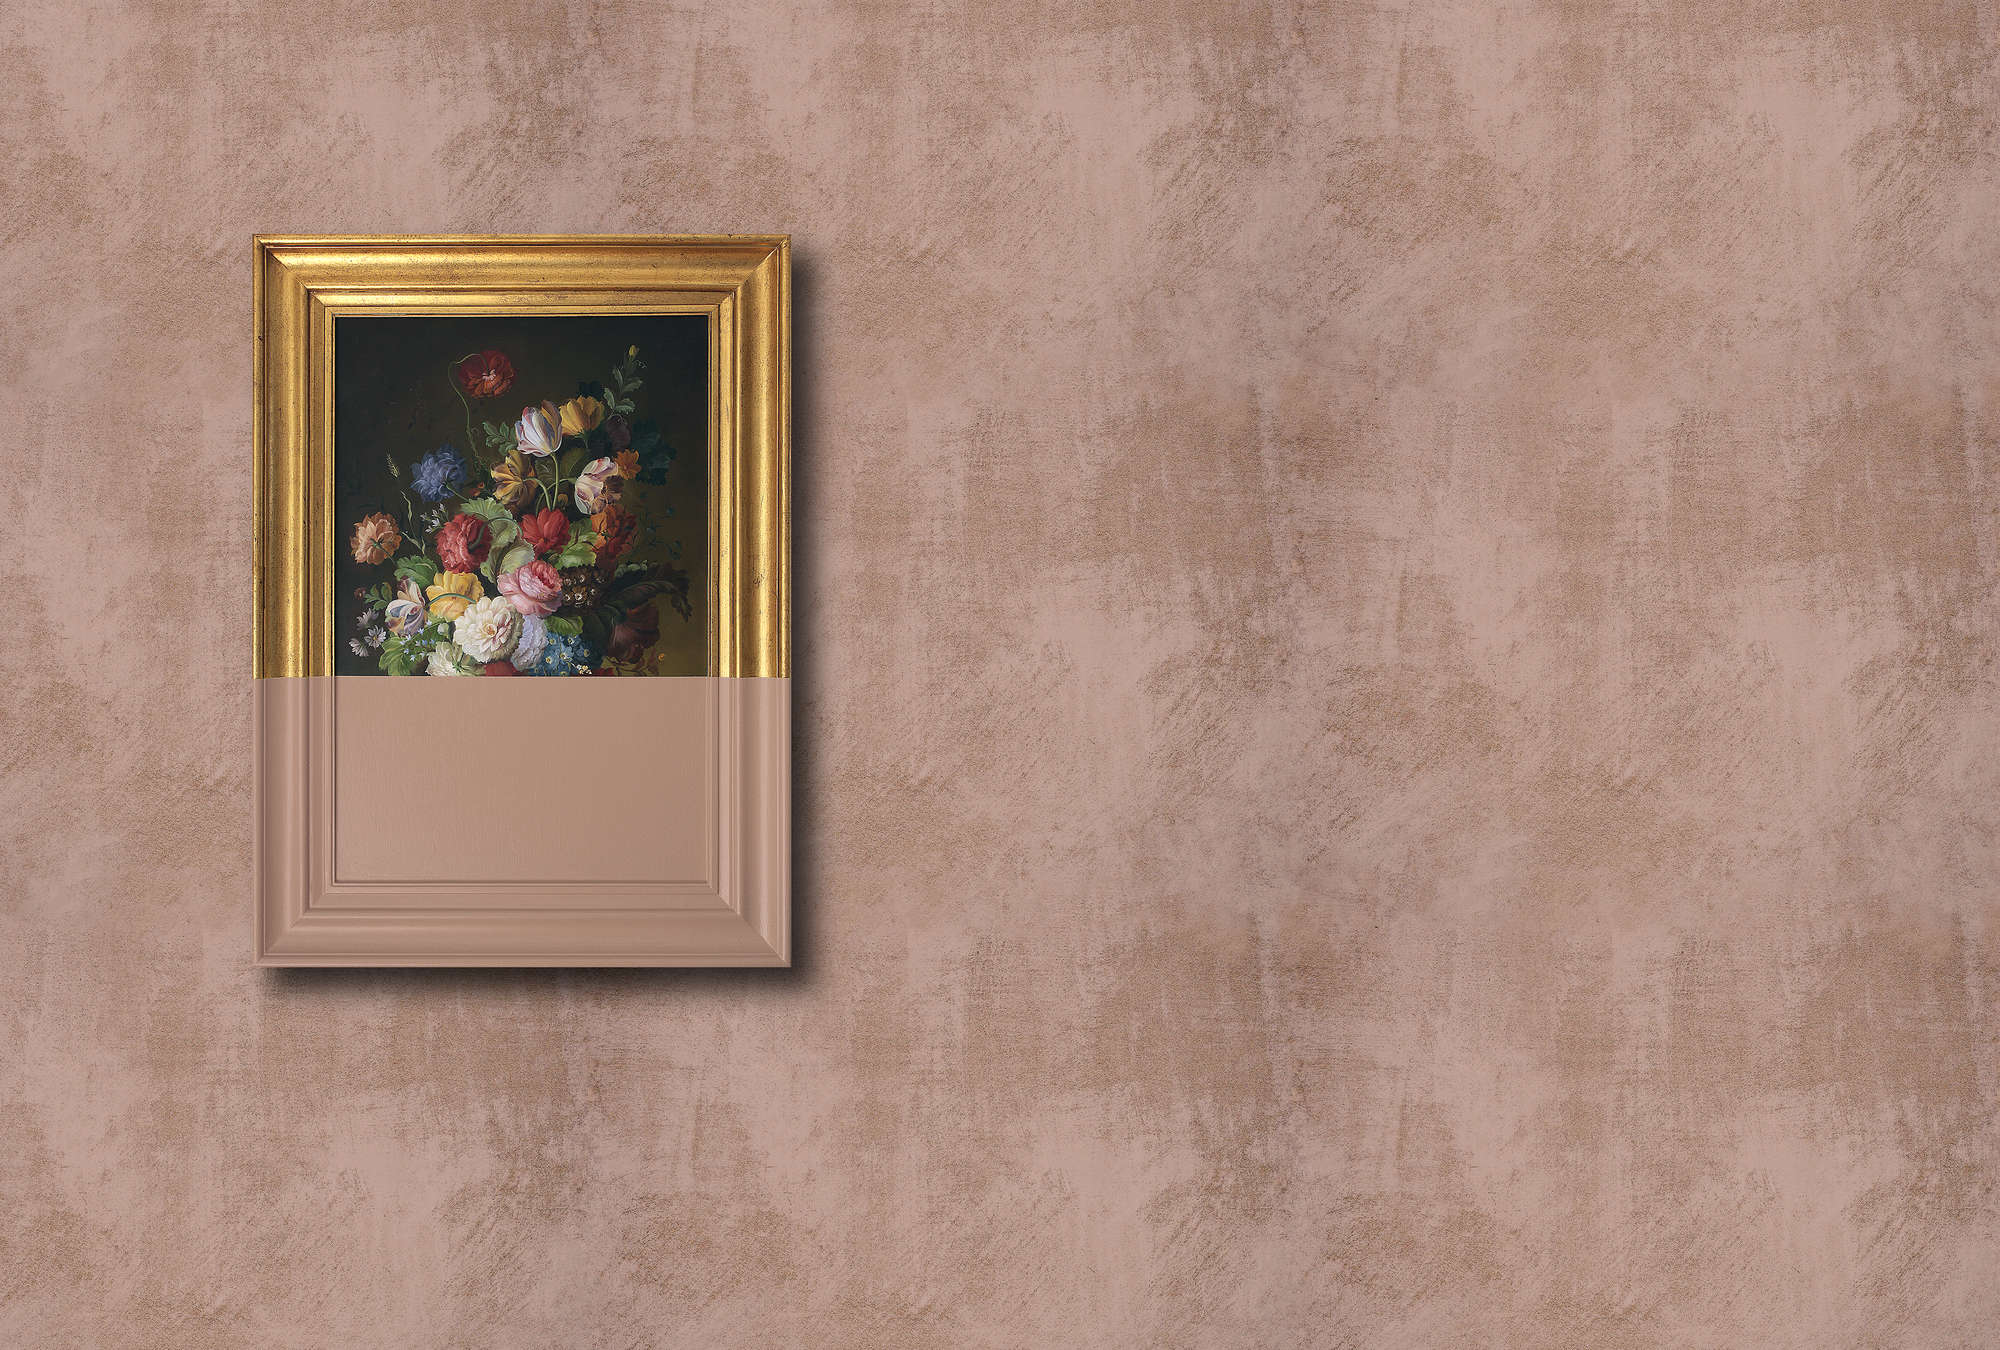             Frame 2 - papier peint à structure essuyée œuvre d'art repeinte, cuivre - cuivre, rose | structure intissé
        